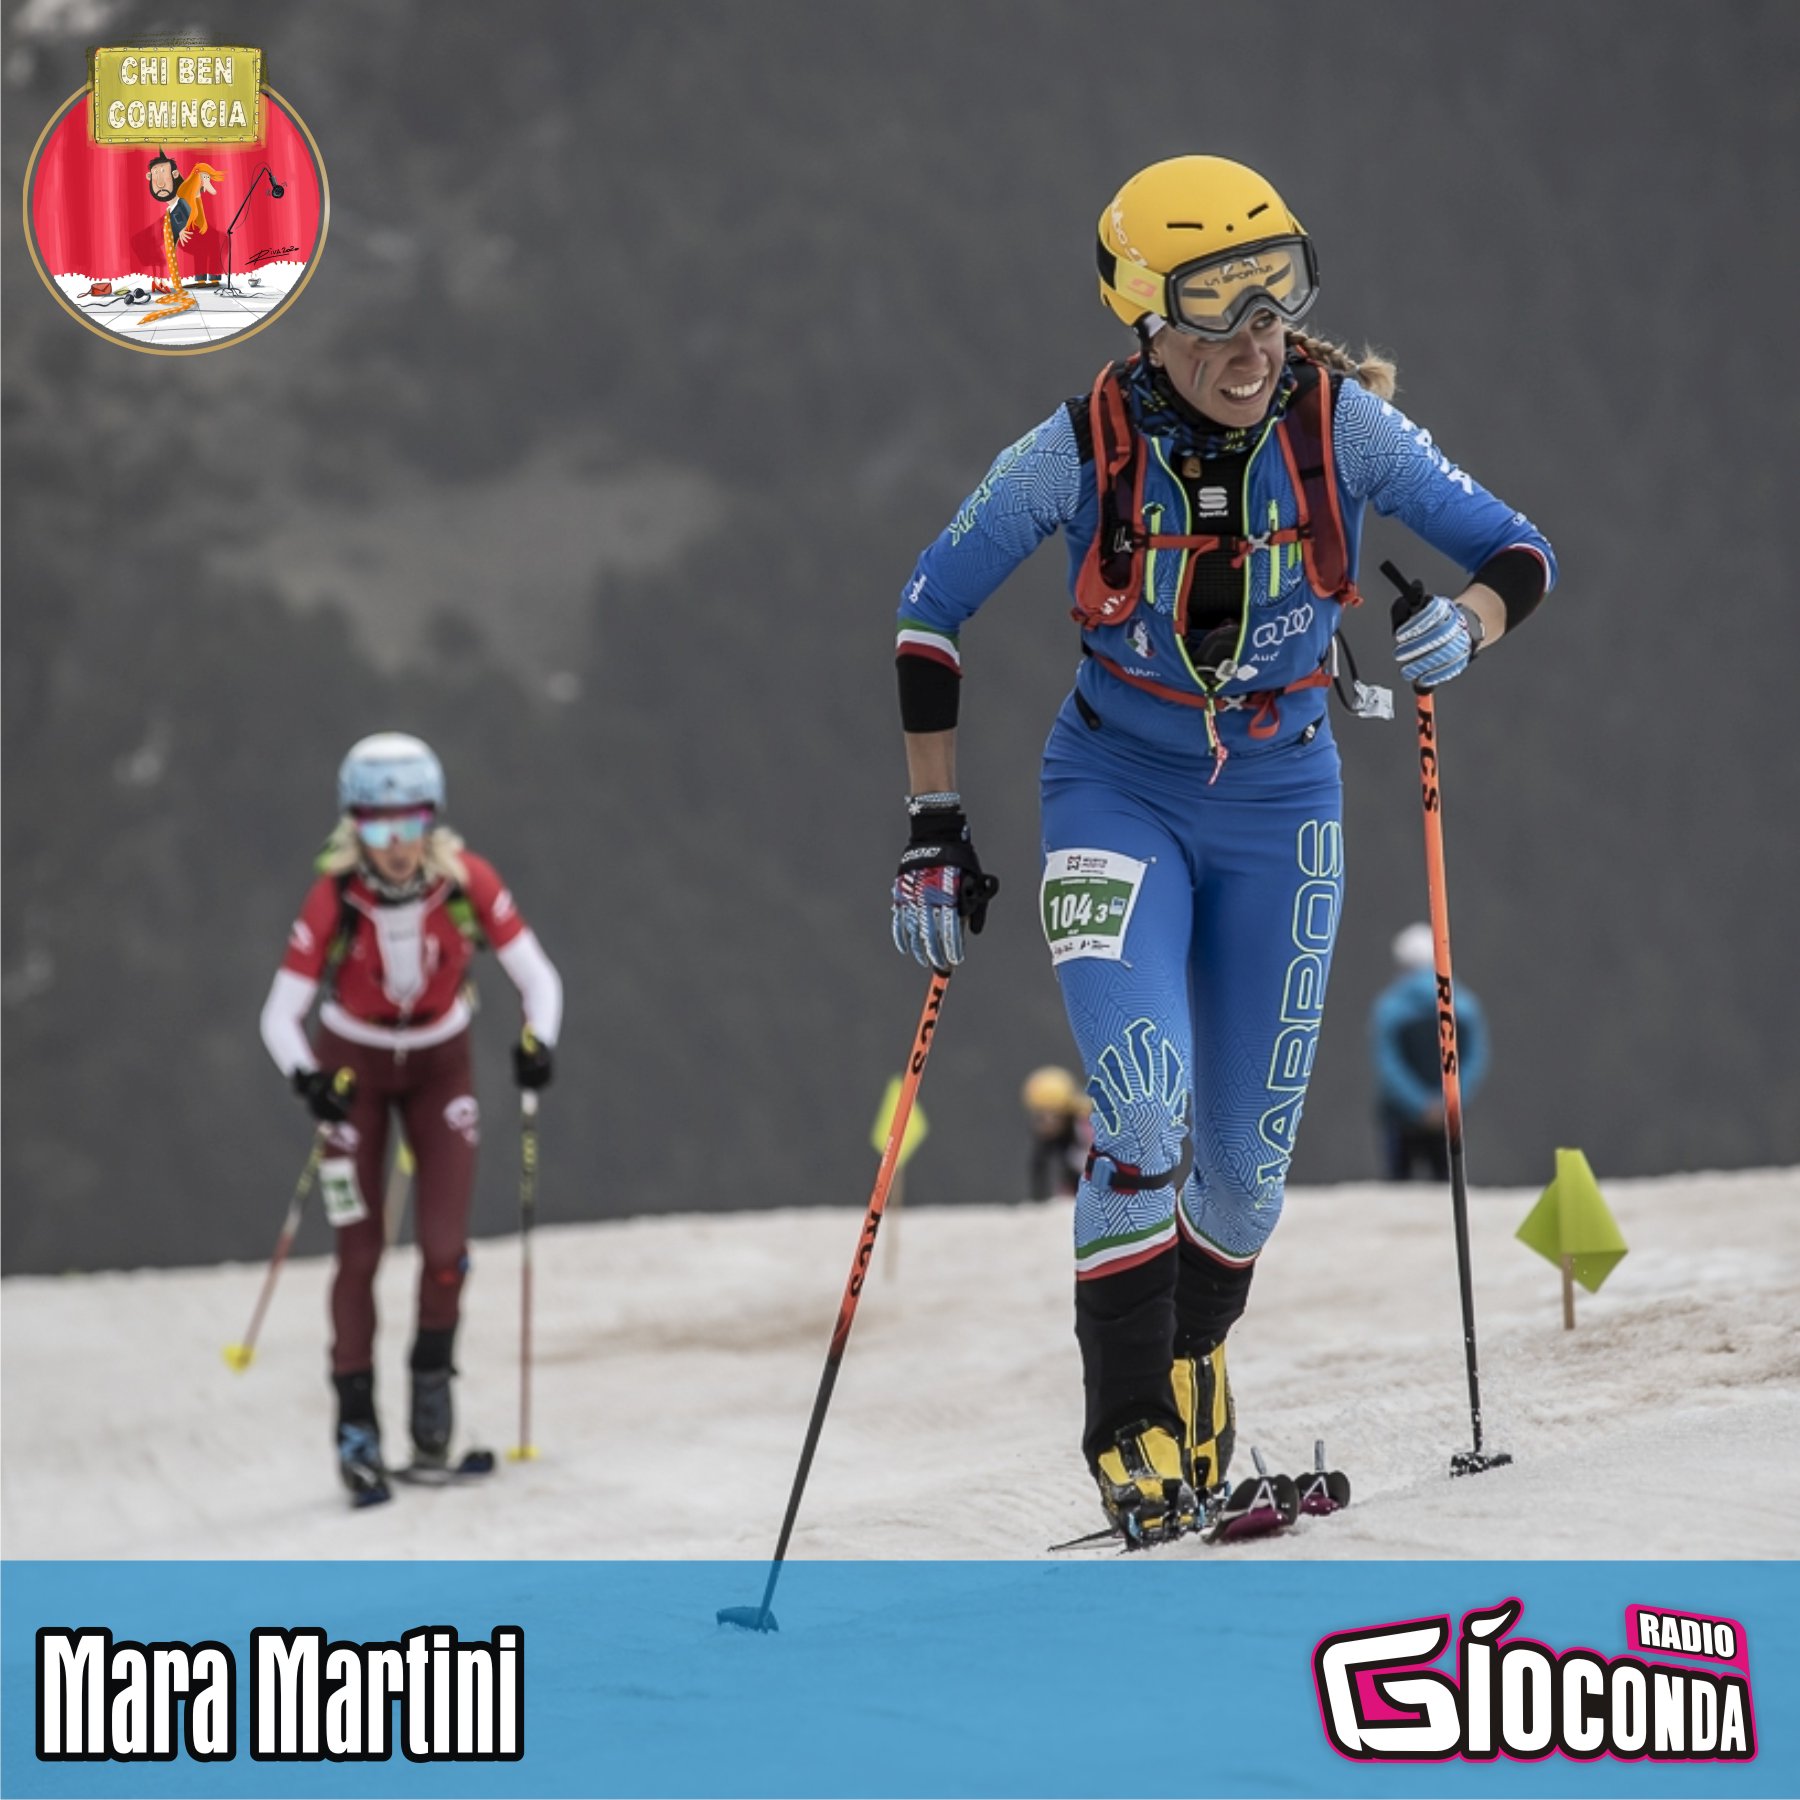 L'ospite d'onore della nuova puntata di "Chi ben comincia", in onda lunedì 22 marzo, sarà la campionessa del Mondo di Ski Alp Mara Martini